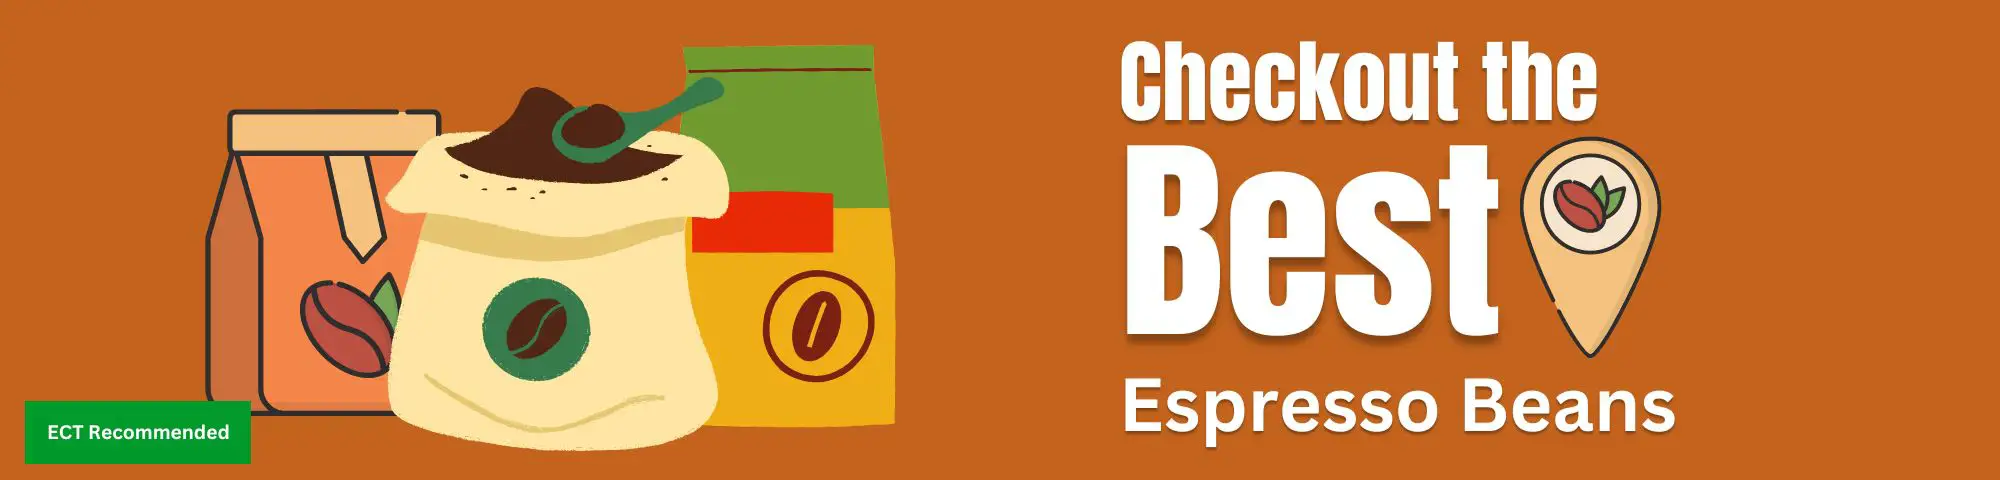 Best-Espresso-Beans-Homepage-Banner